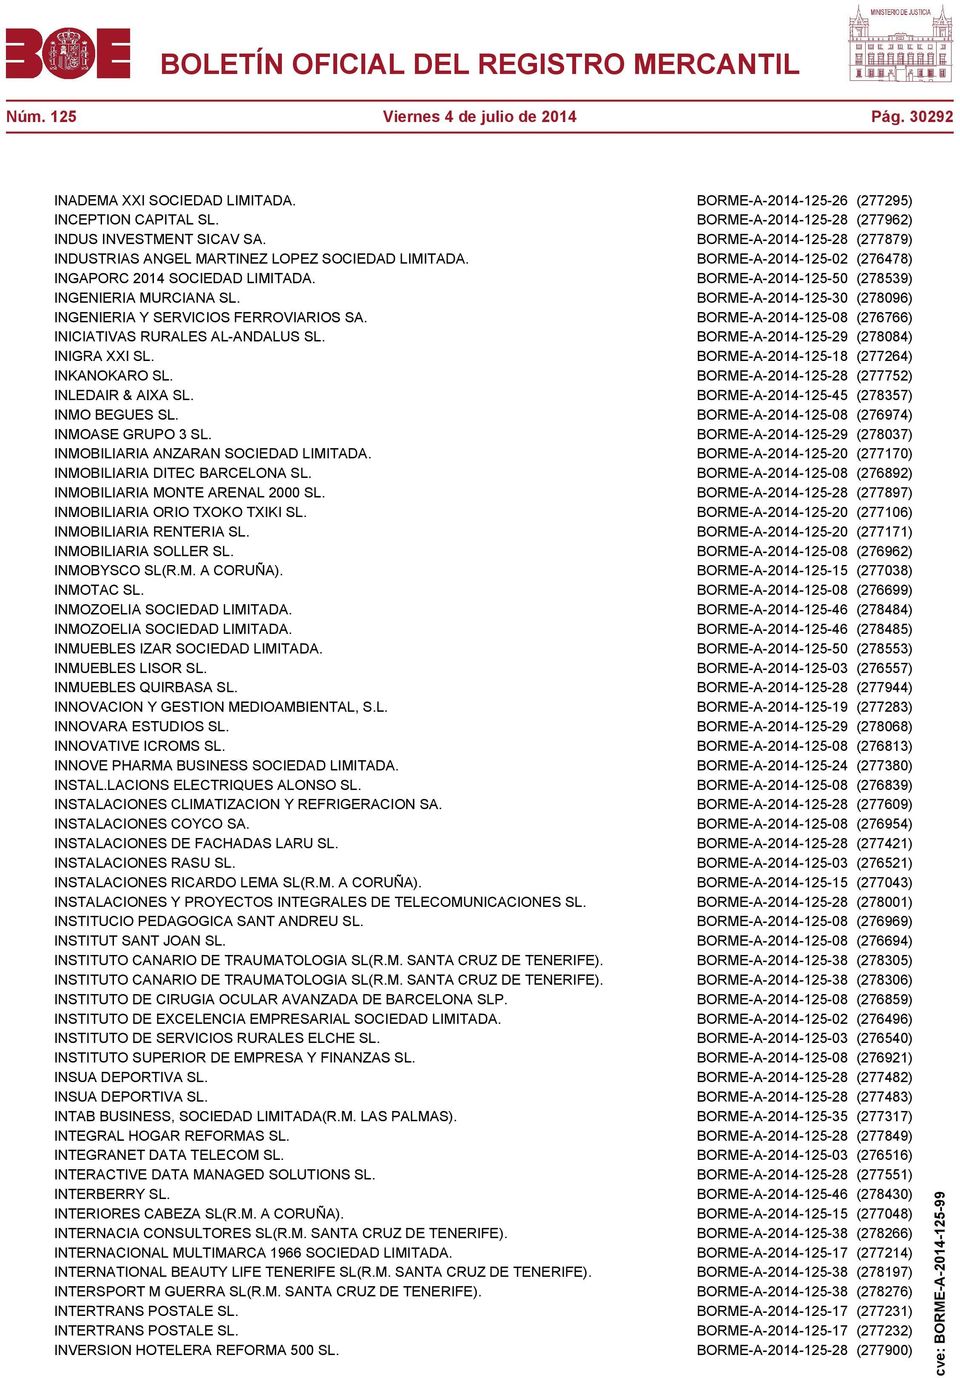 BORME-A-2014-125-30 (278096) INGENIERIA Y SERVICIOS FERROVIARIOS SA. BORME-A-2014-125-08 (276766) INICIATIVAS RURALES AL-ANDALUS SL. BORME-A-2014-125-29 (278084) INIGRA XXI SL.